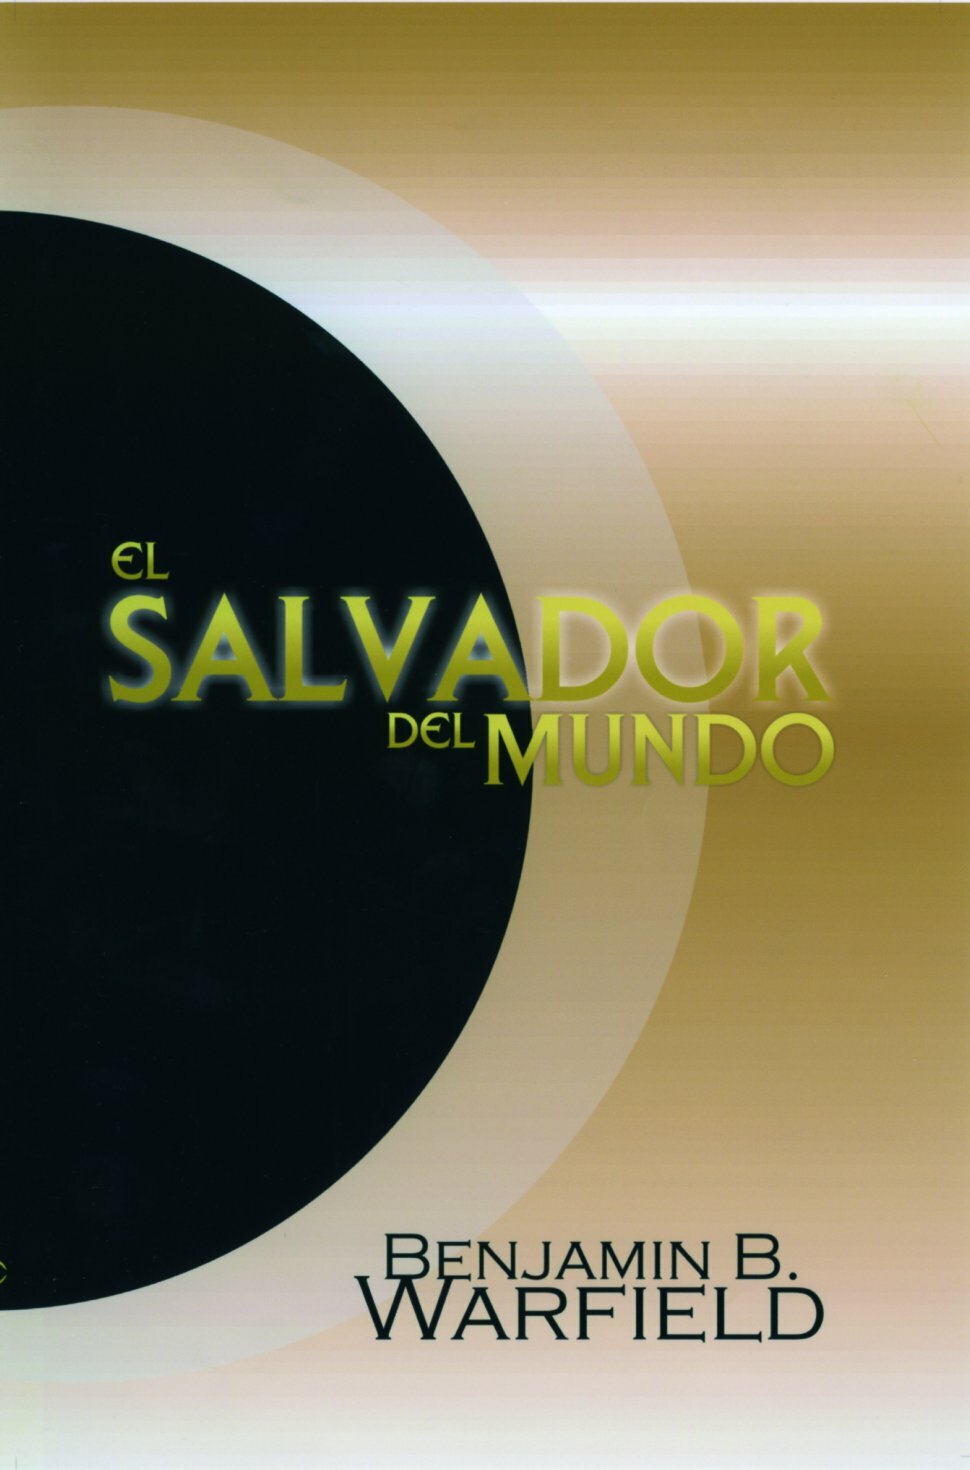 El Salvador del mundo